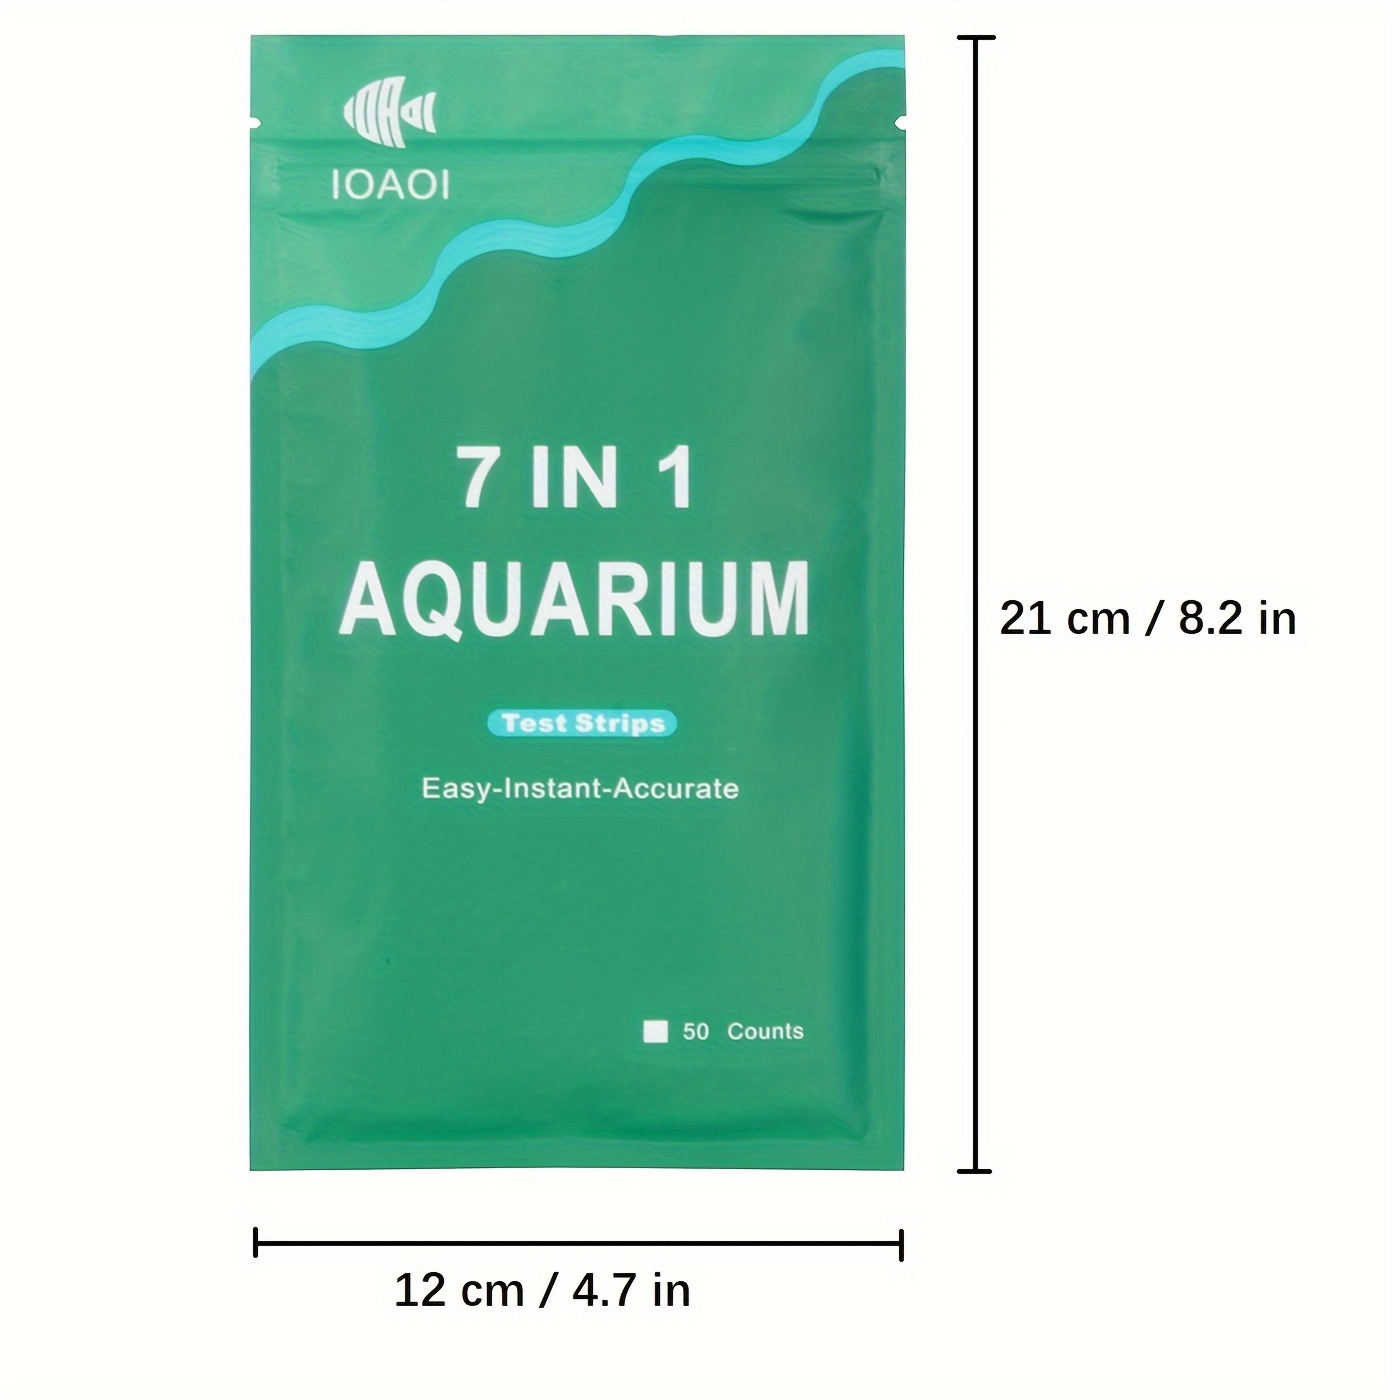 7-in-1 Aquarium Test Strips